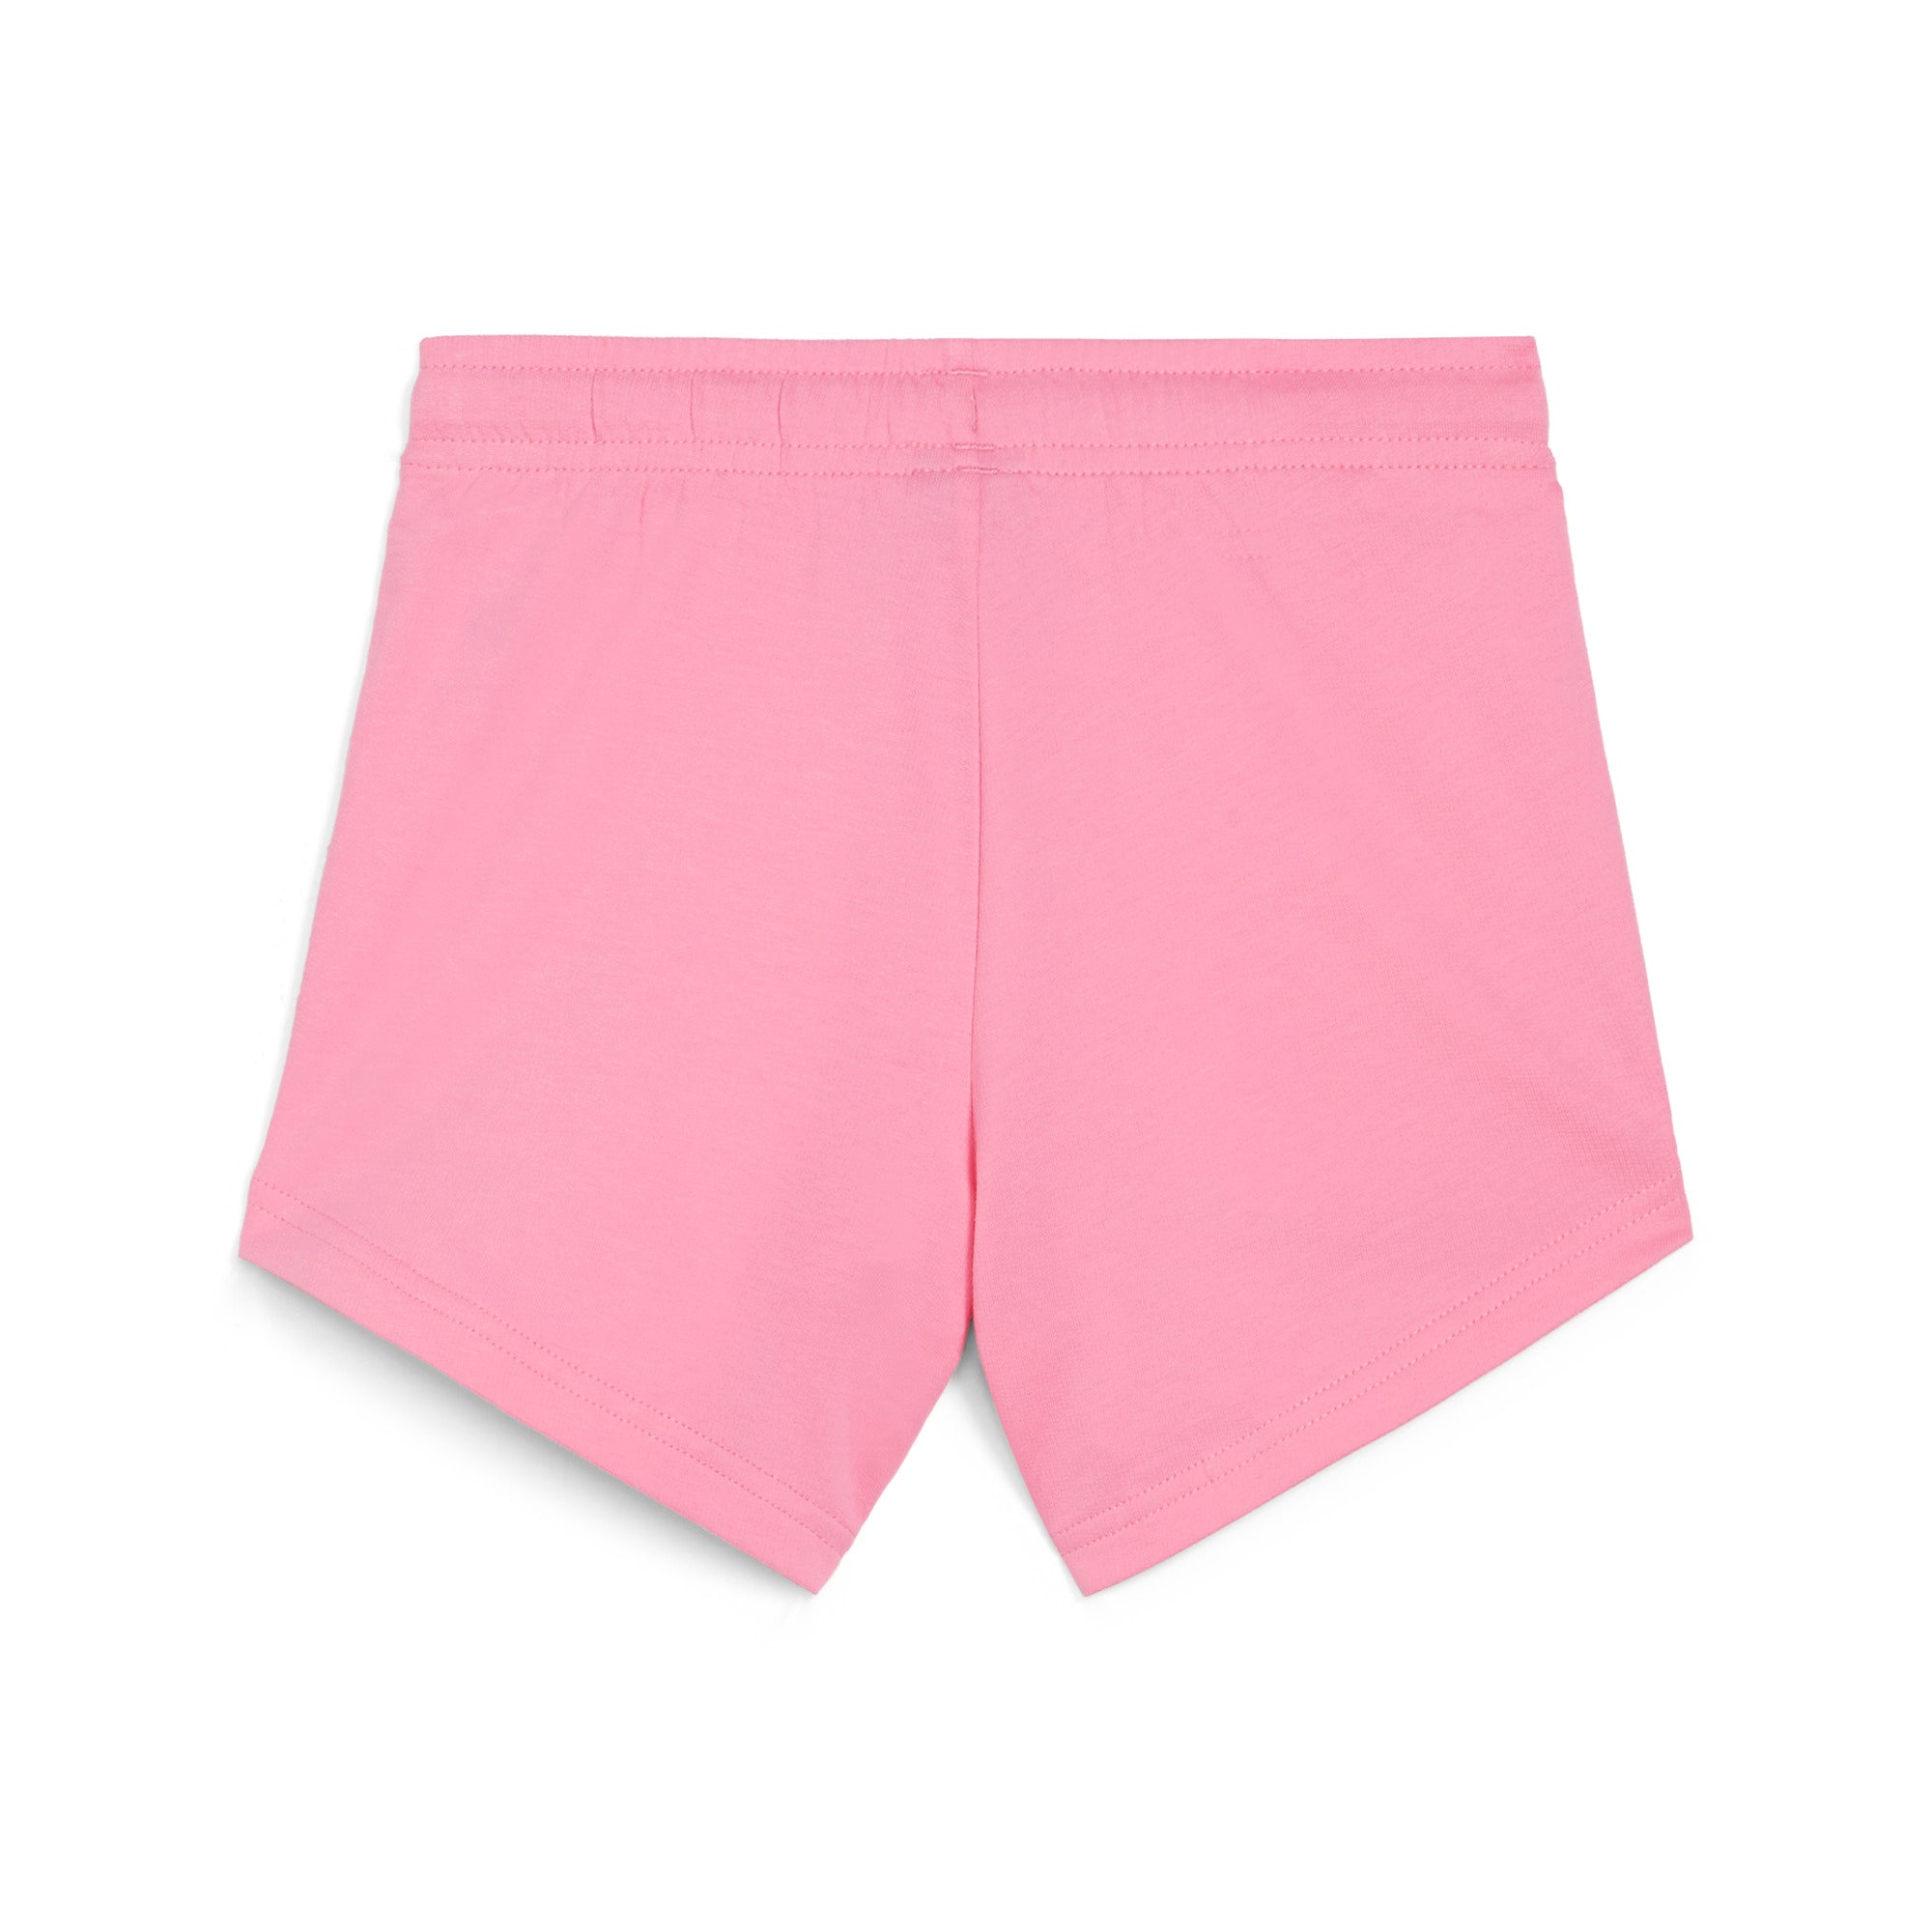 PUMA 小童基本系列Ess+ Summer Camp短褲